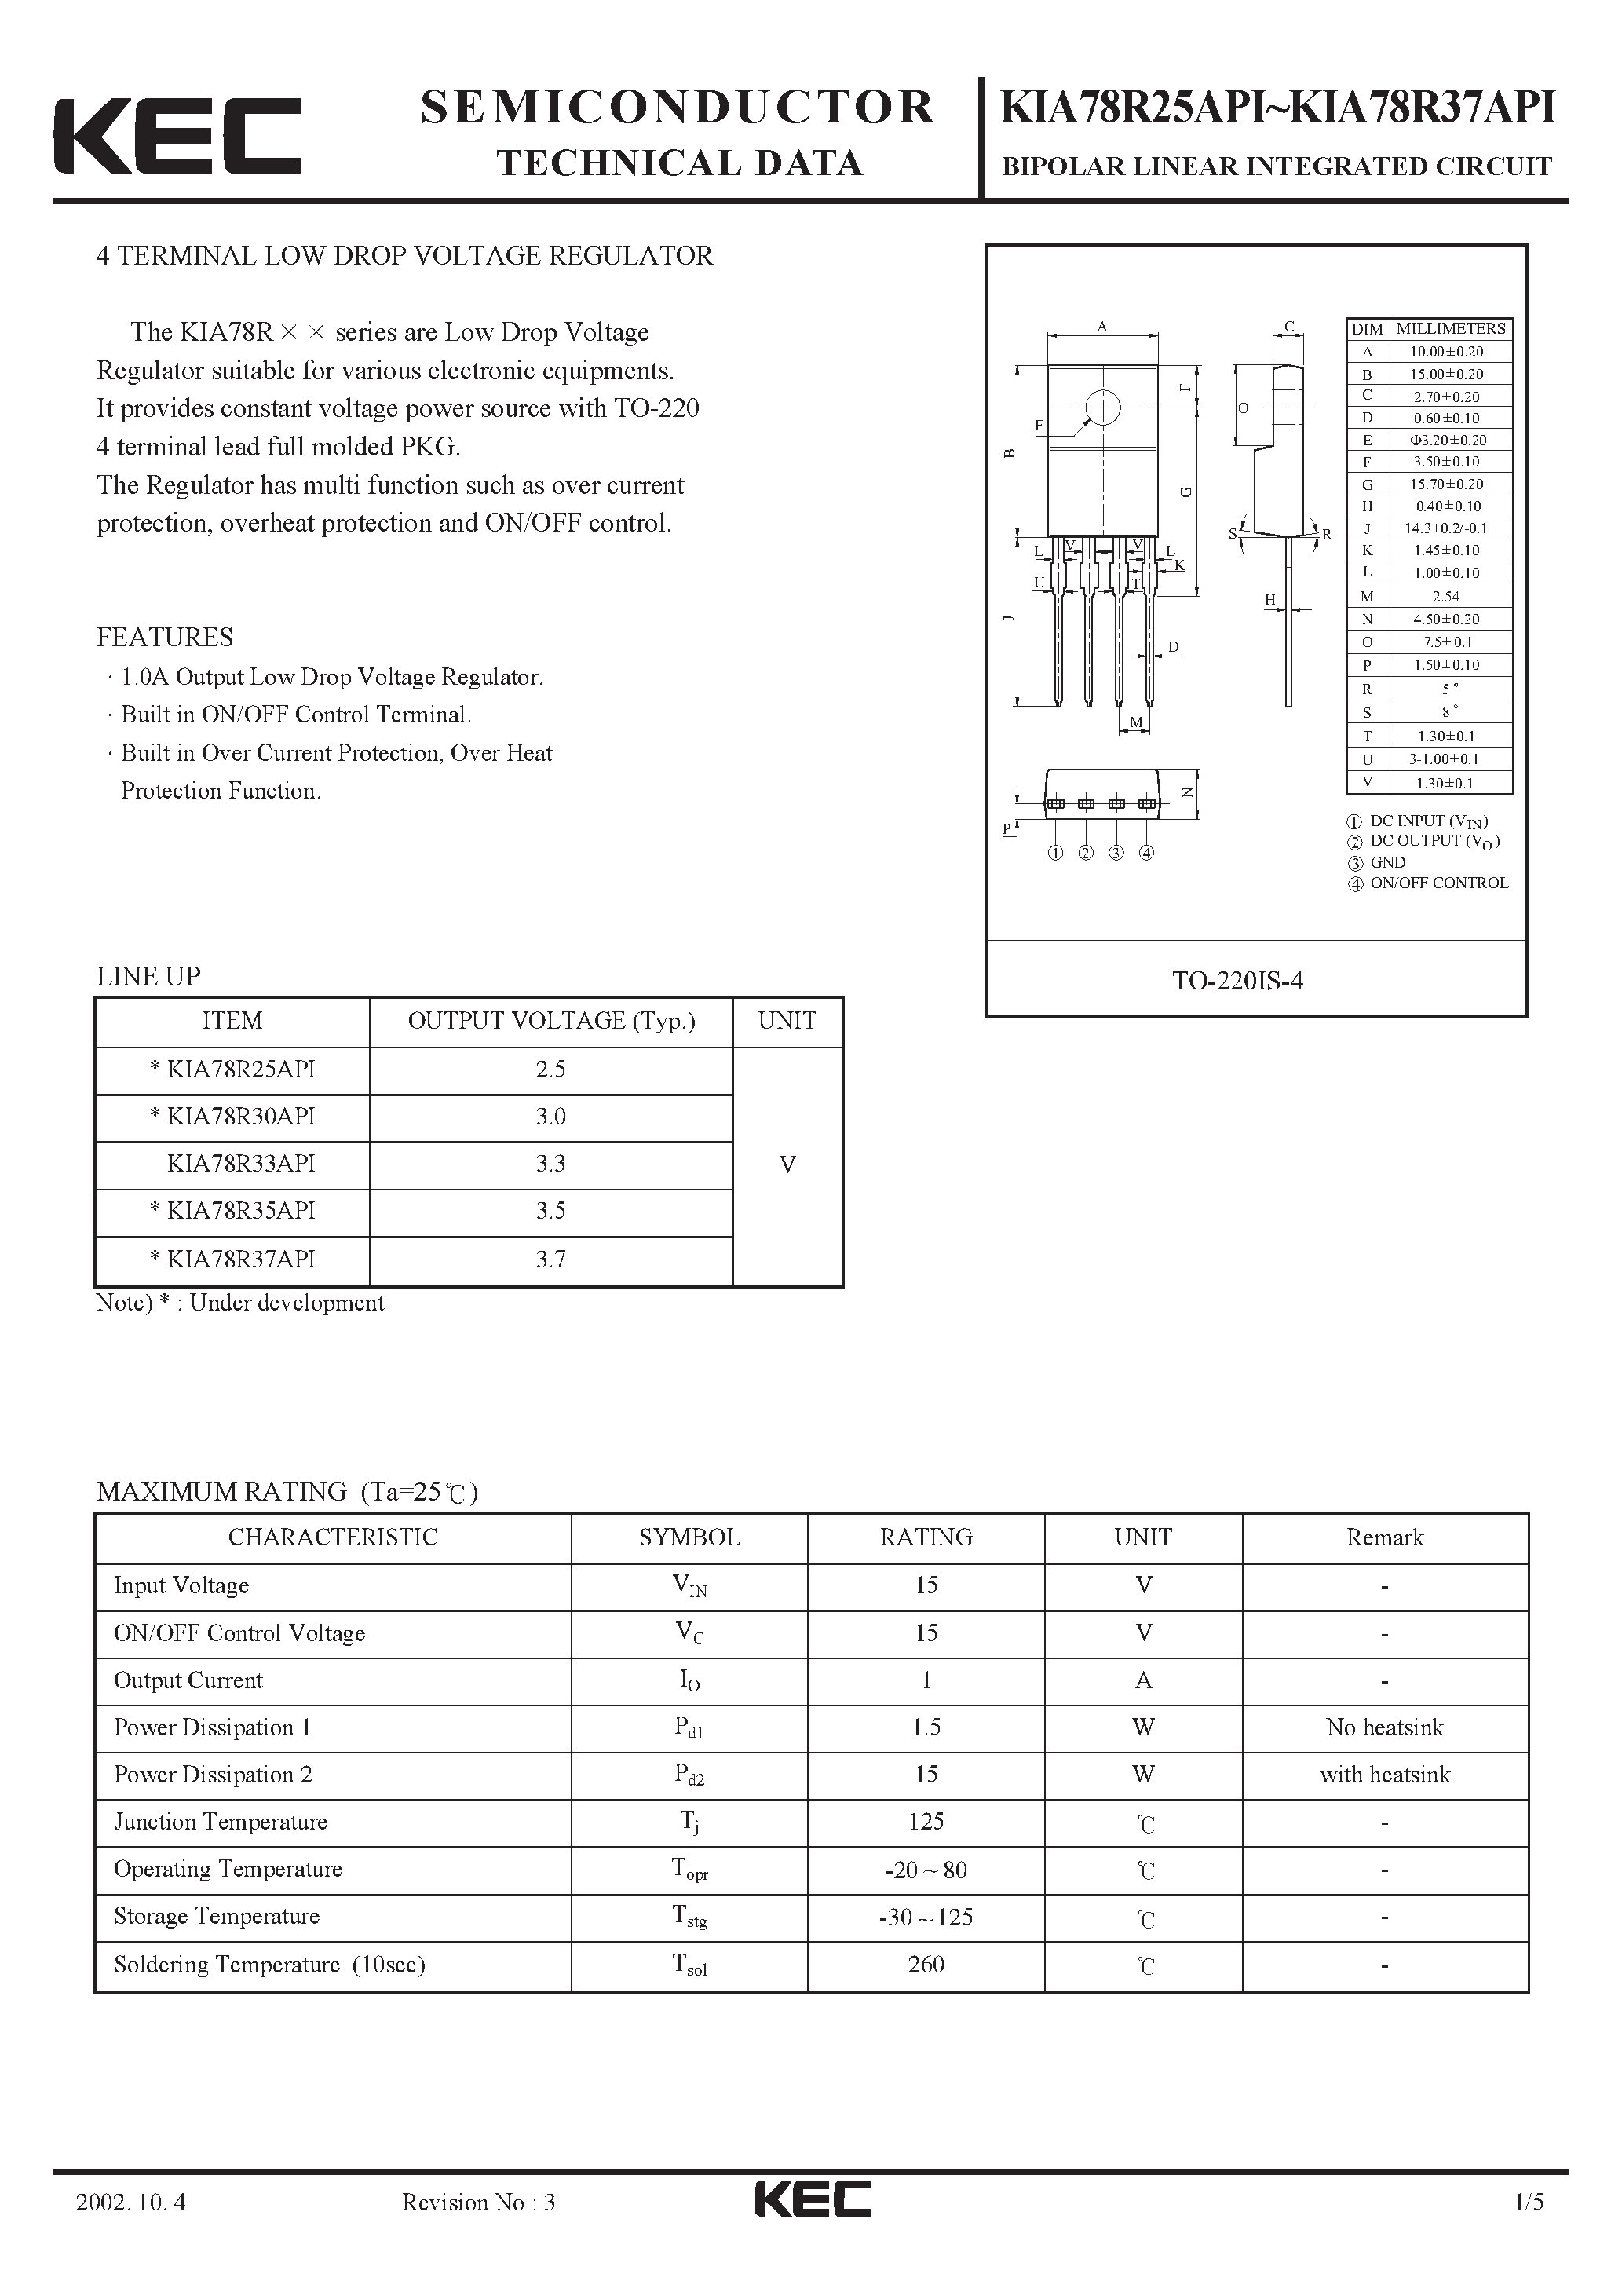 Datasheet KIA78R30API - BIPOLAR LINEAR INTEGRATED CIRCUIT (4 TERMINAL LOW DROP VOLTAGE REGULATOR) page 1